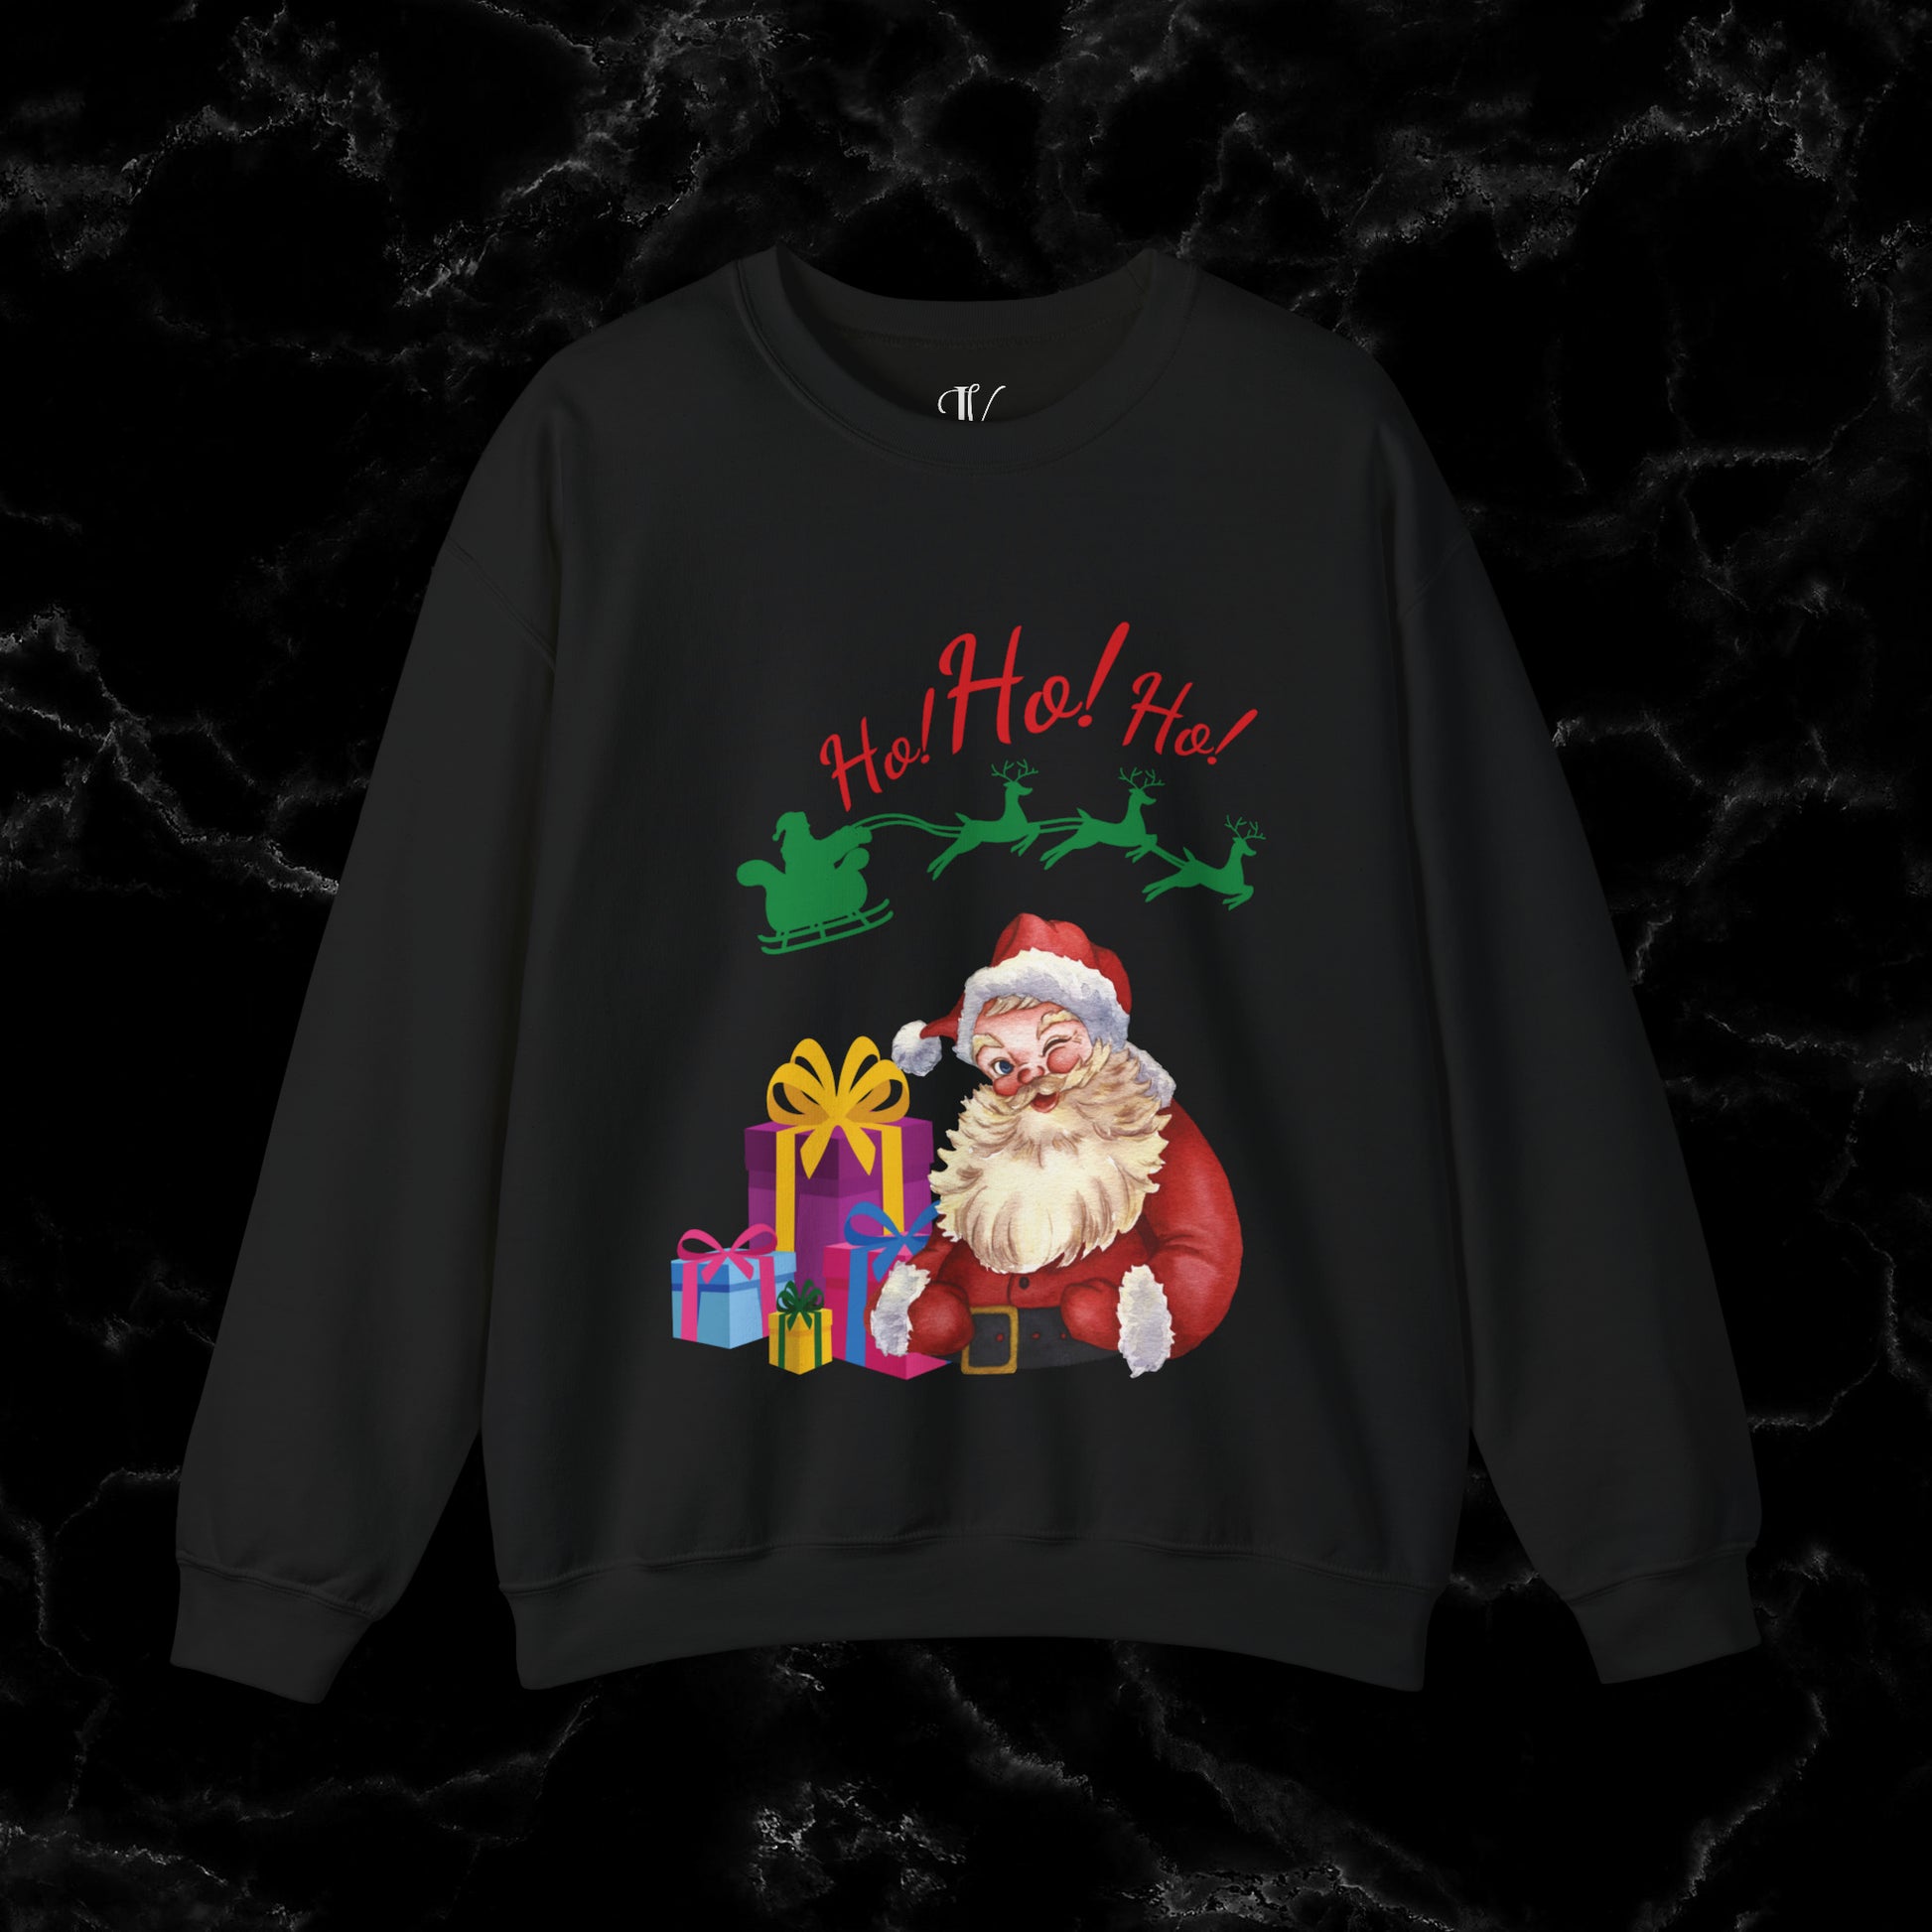 Retro Santa Sweatshirt - Vintage Christmas Fashion for Holiday Cheer Sweatshirt S Black 